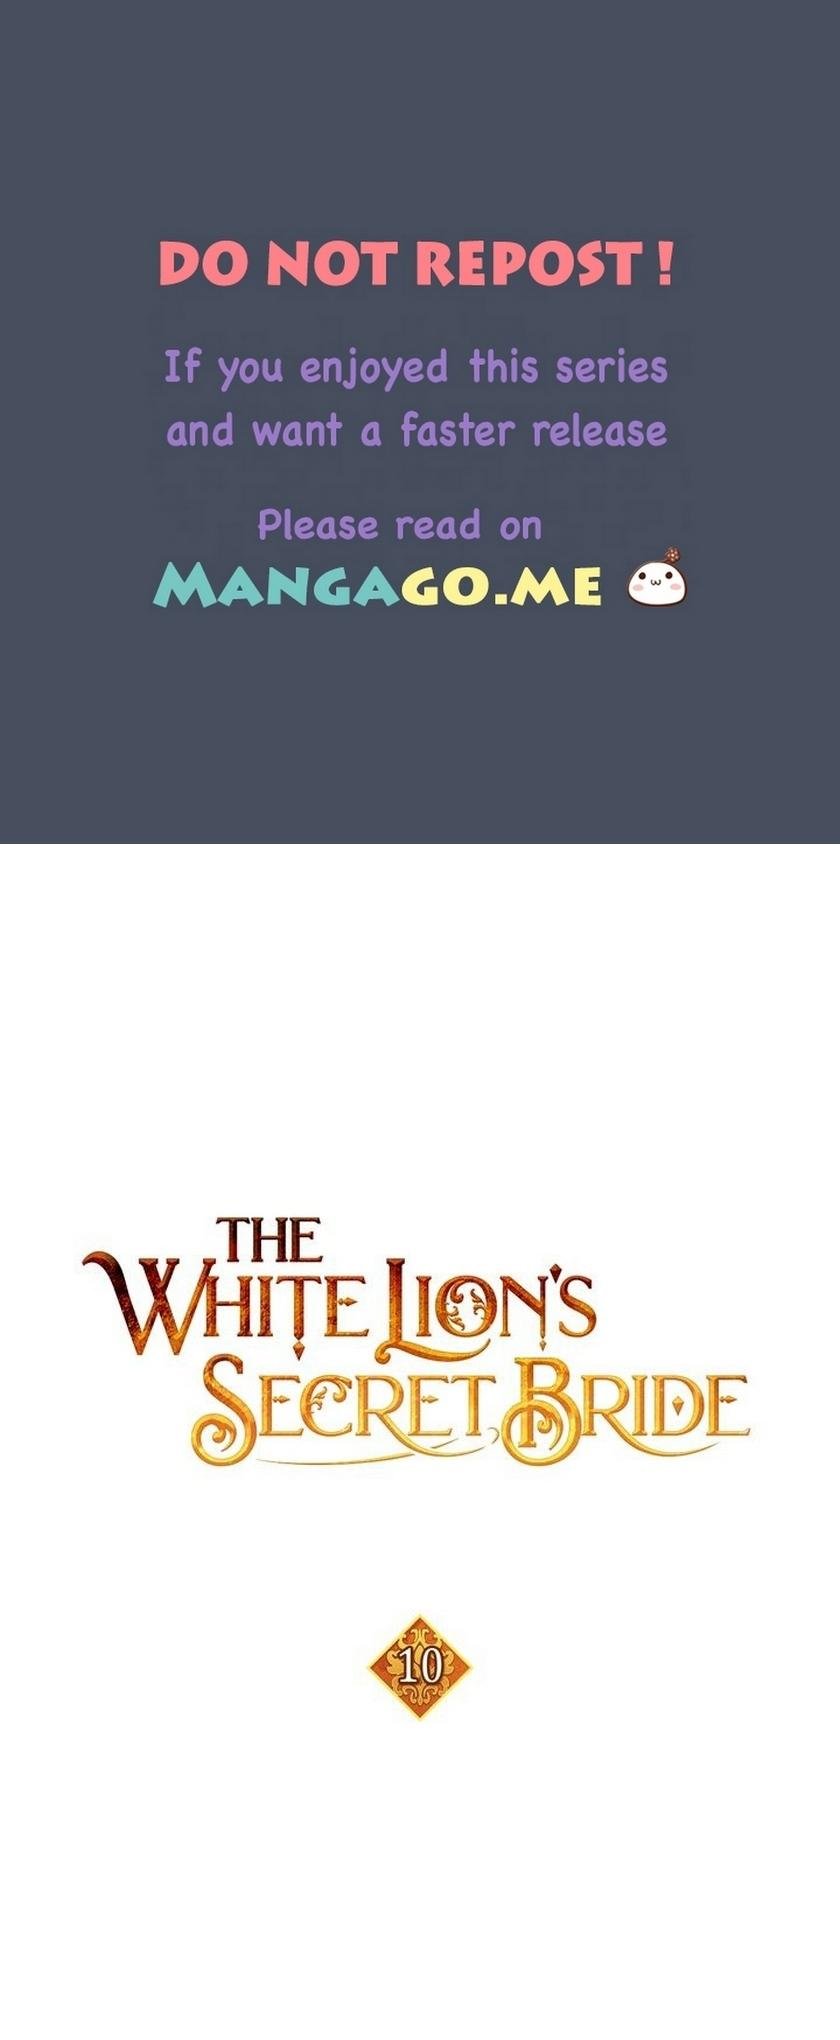 The White Lion’s Secret Bride chapter 10